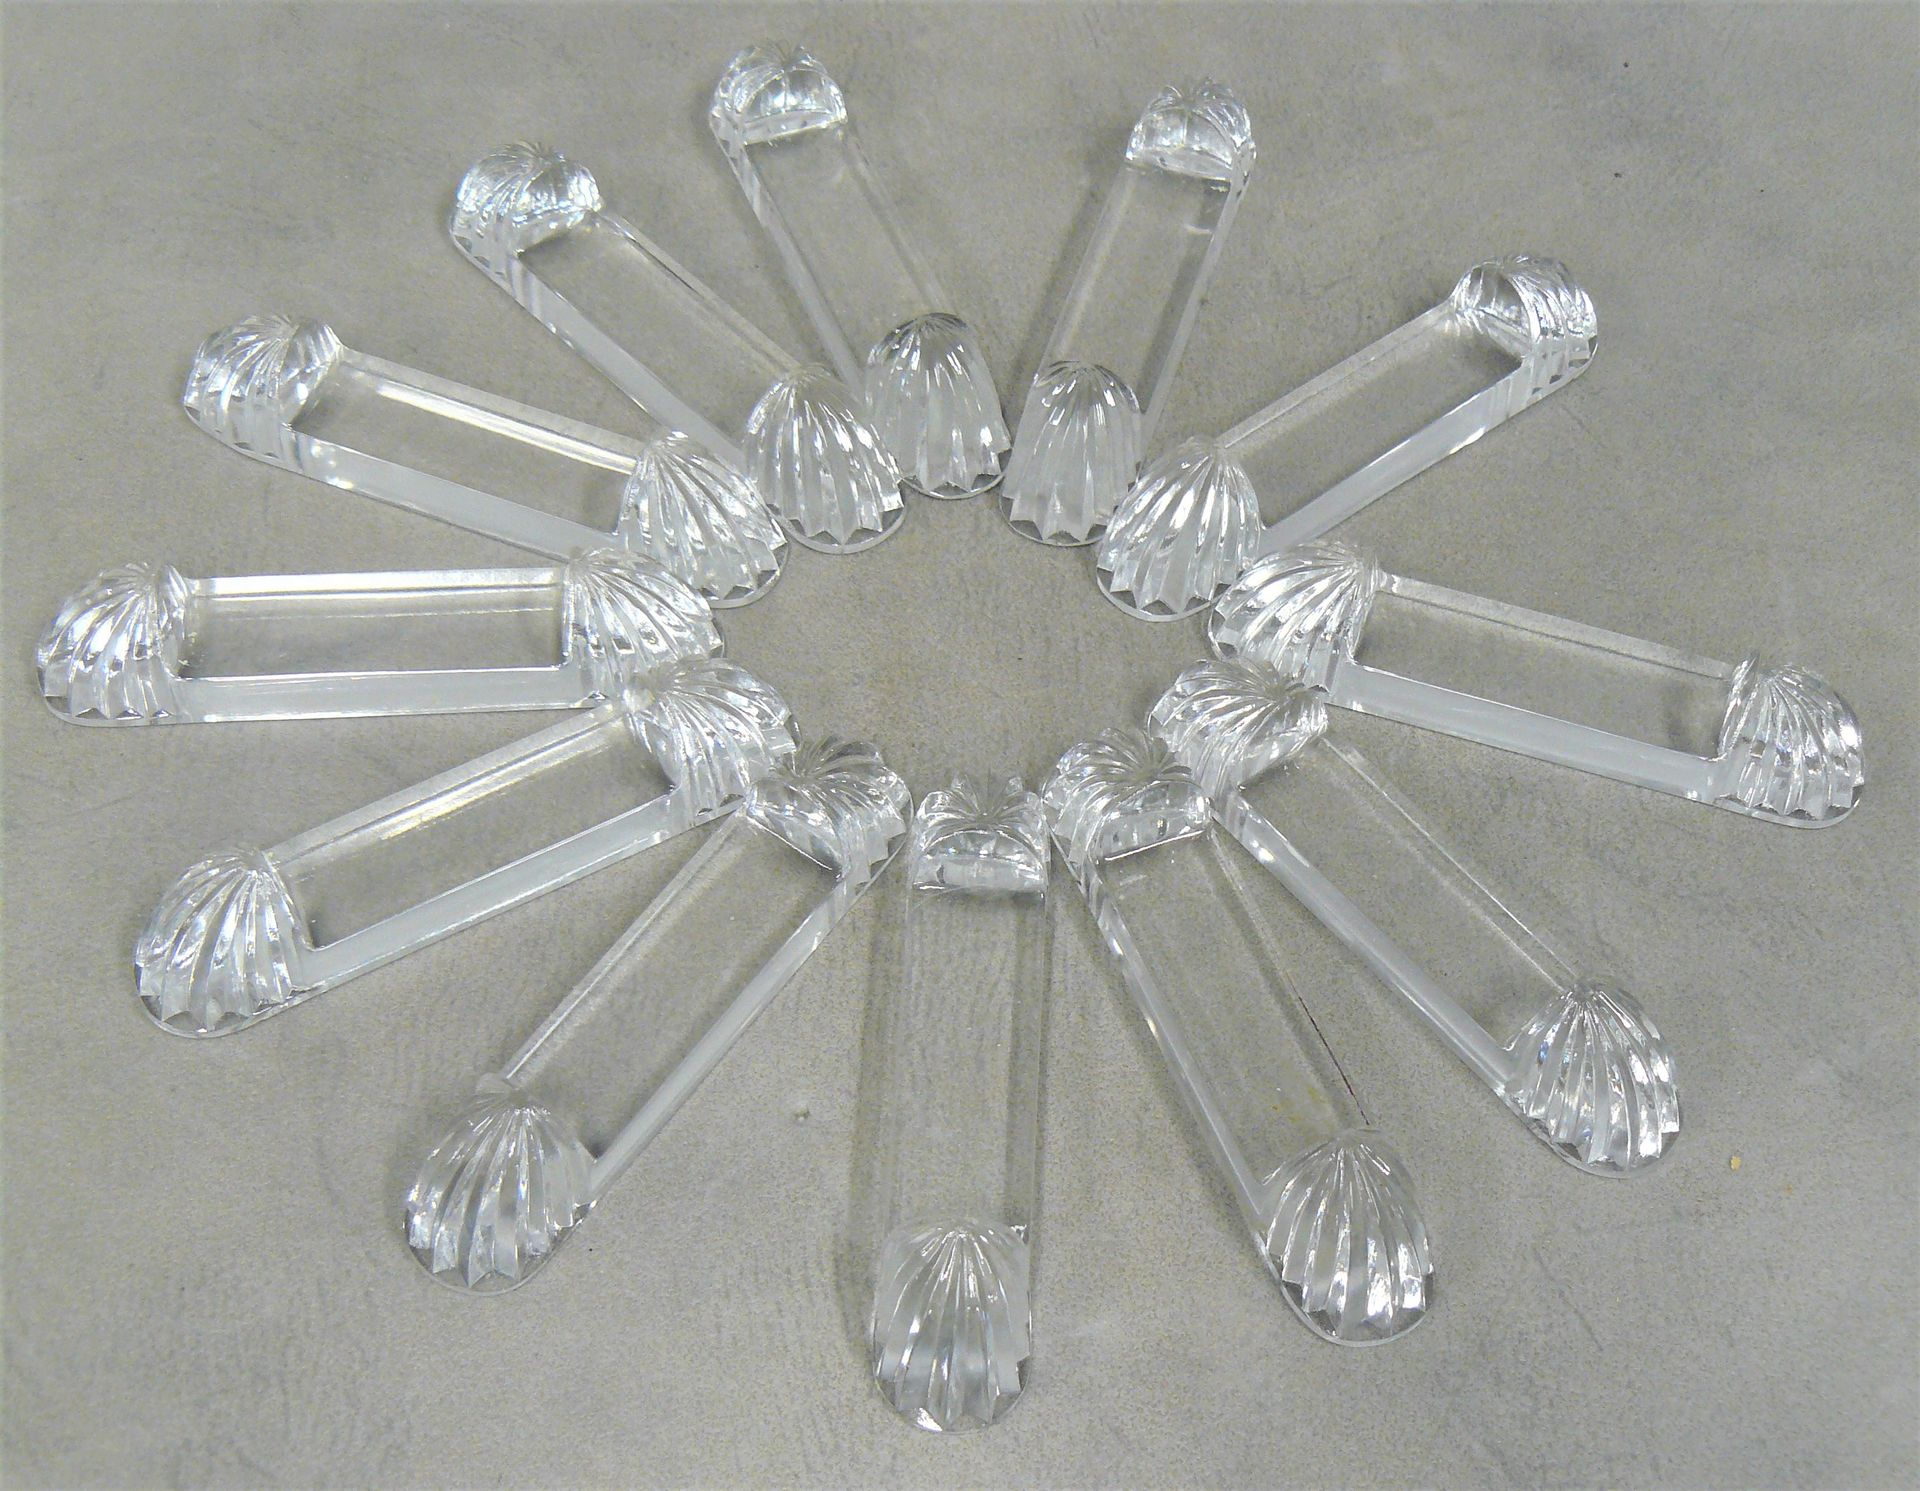 Null doce portacuchillos de cristal tallado con estrías laterales